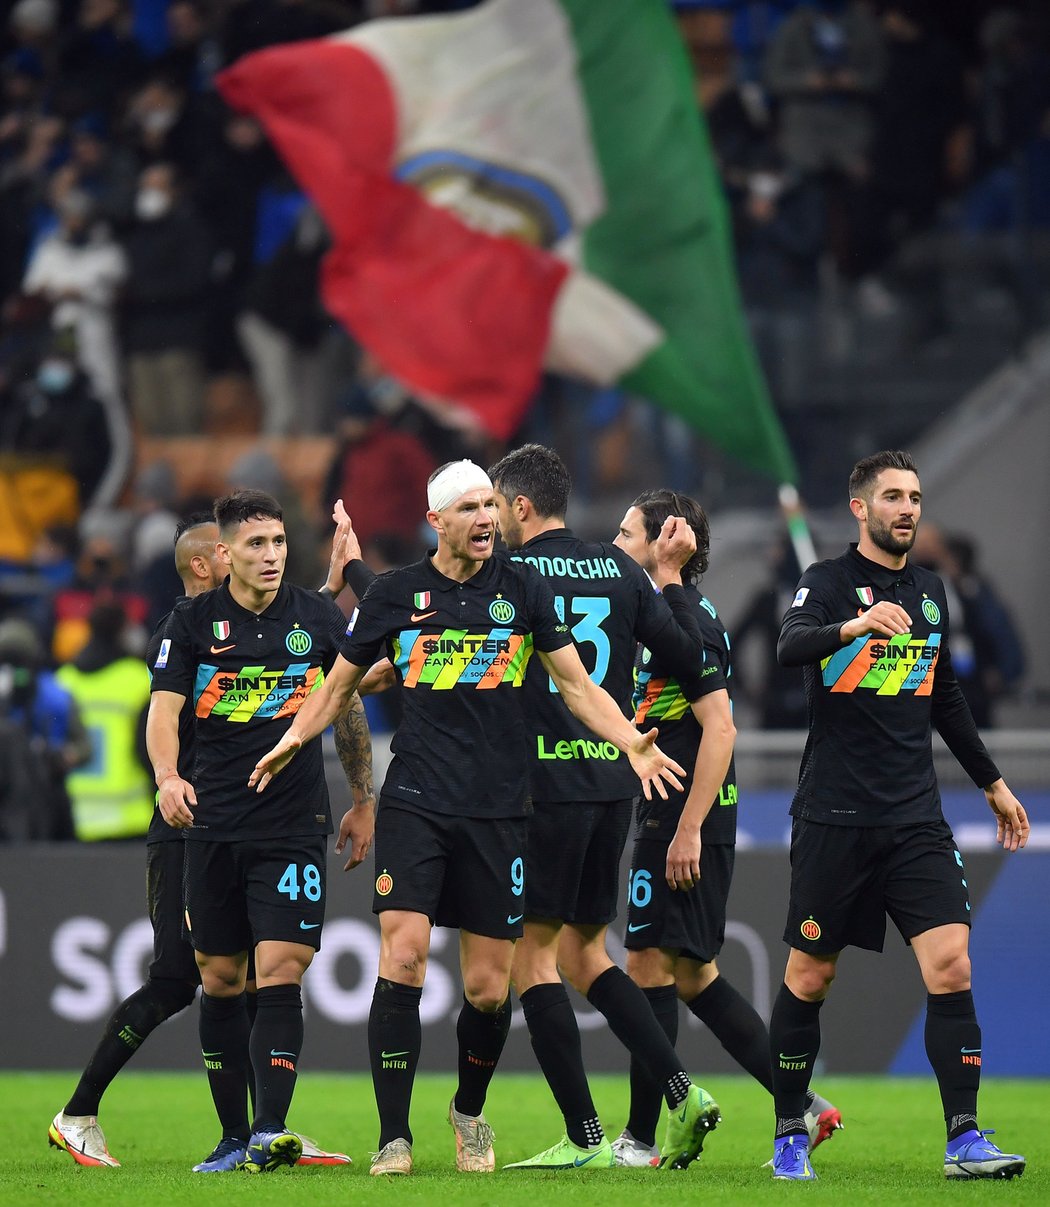 Neporazitelnost Neapole skončila až ve 13. kole. Interu podlehla 2:3